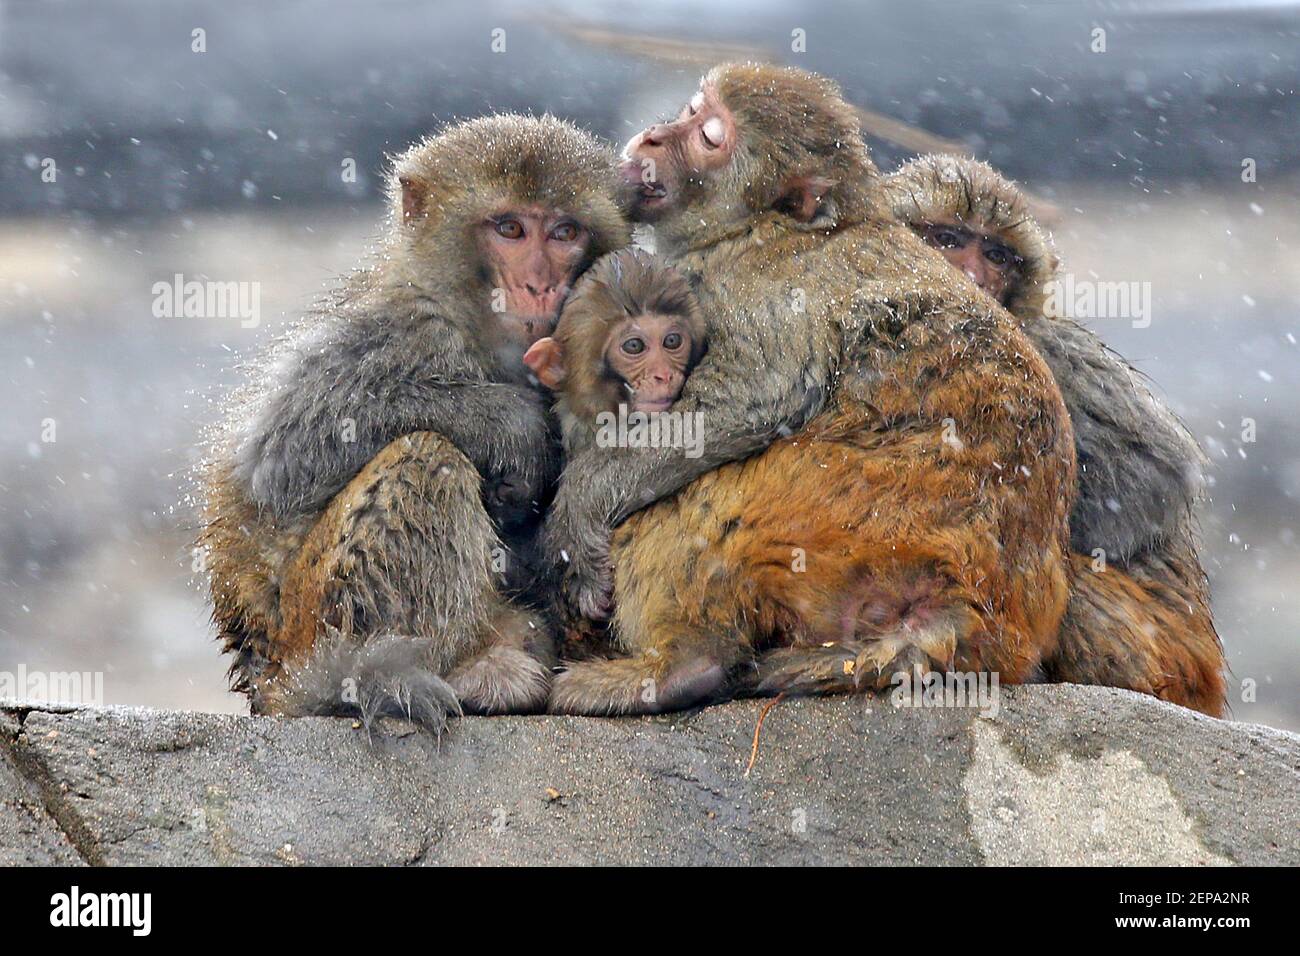 Los monos abrazan un mono pequeño para mantenerse caliente la nieve en la ciudad de Lianyungang, provincia de Jiangsu, al este de China, 22 de noviembre de 2019. (Foto